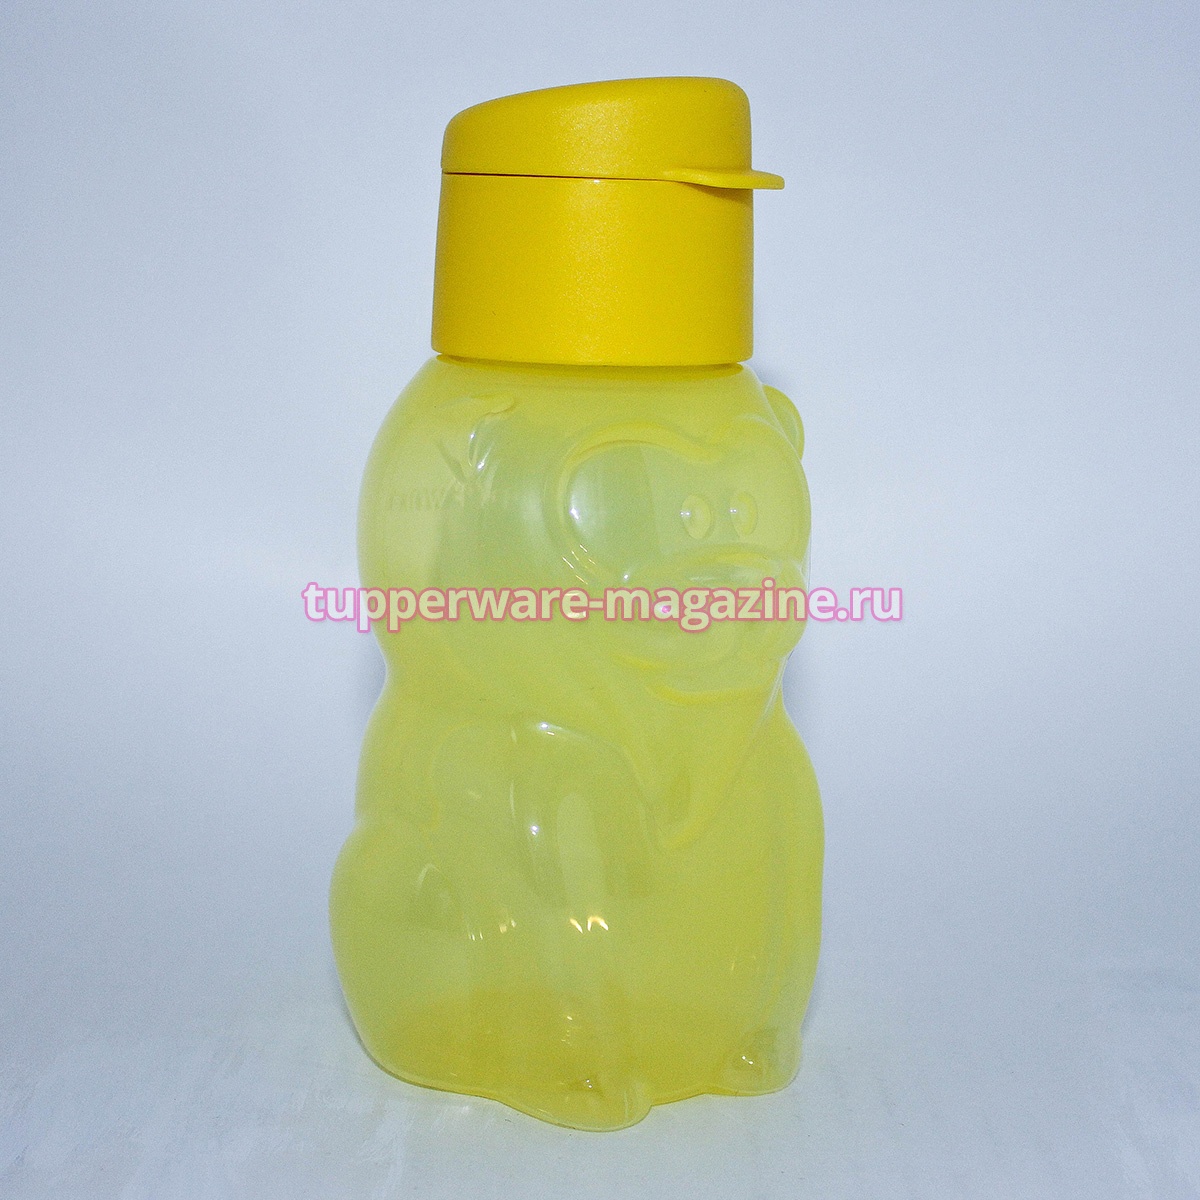 Эко-бутылка "Львенок" в желтом цвете